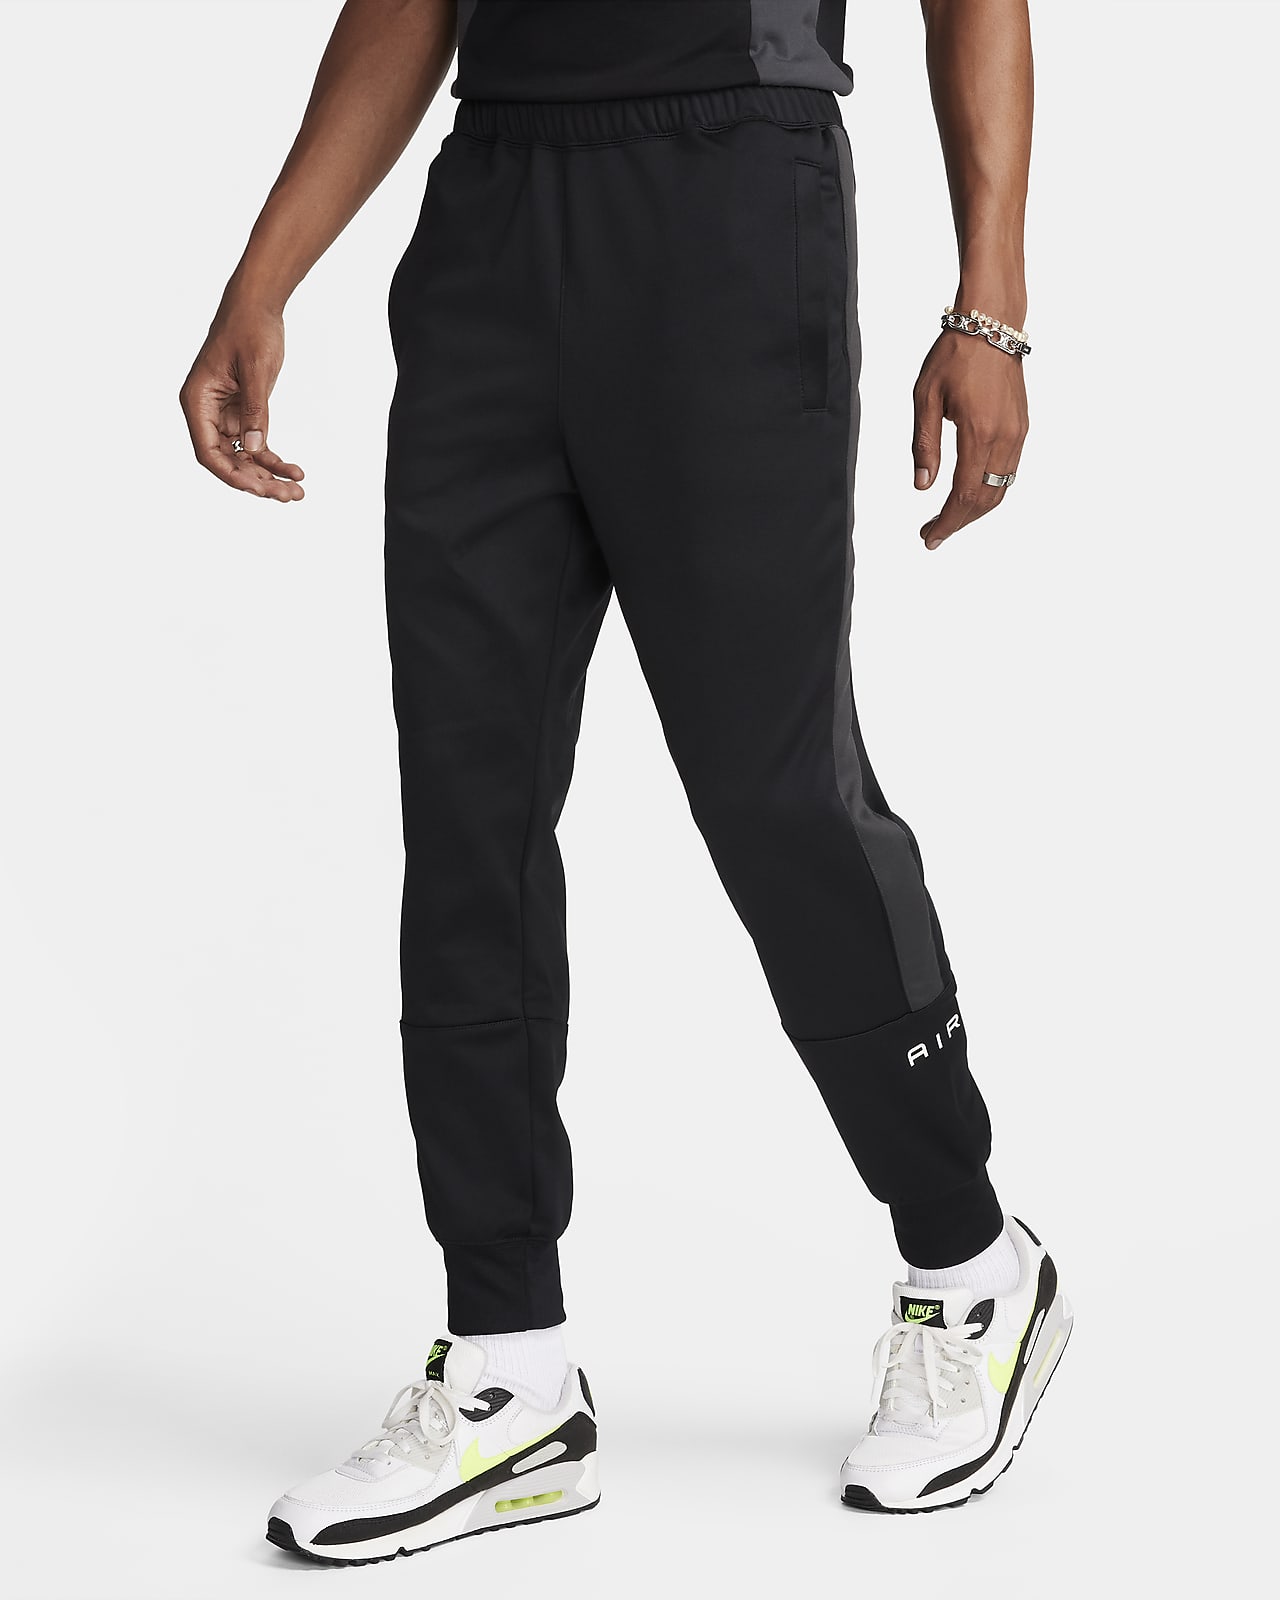 Sweats Nike Air Max för män